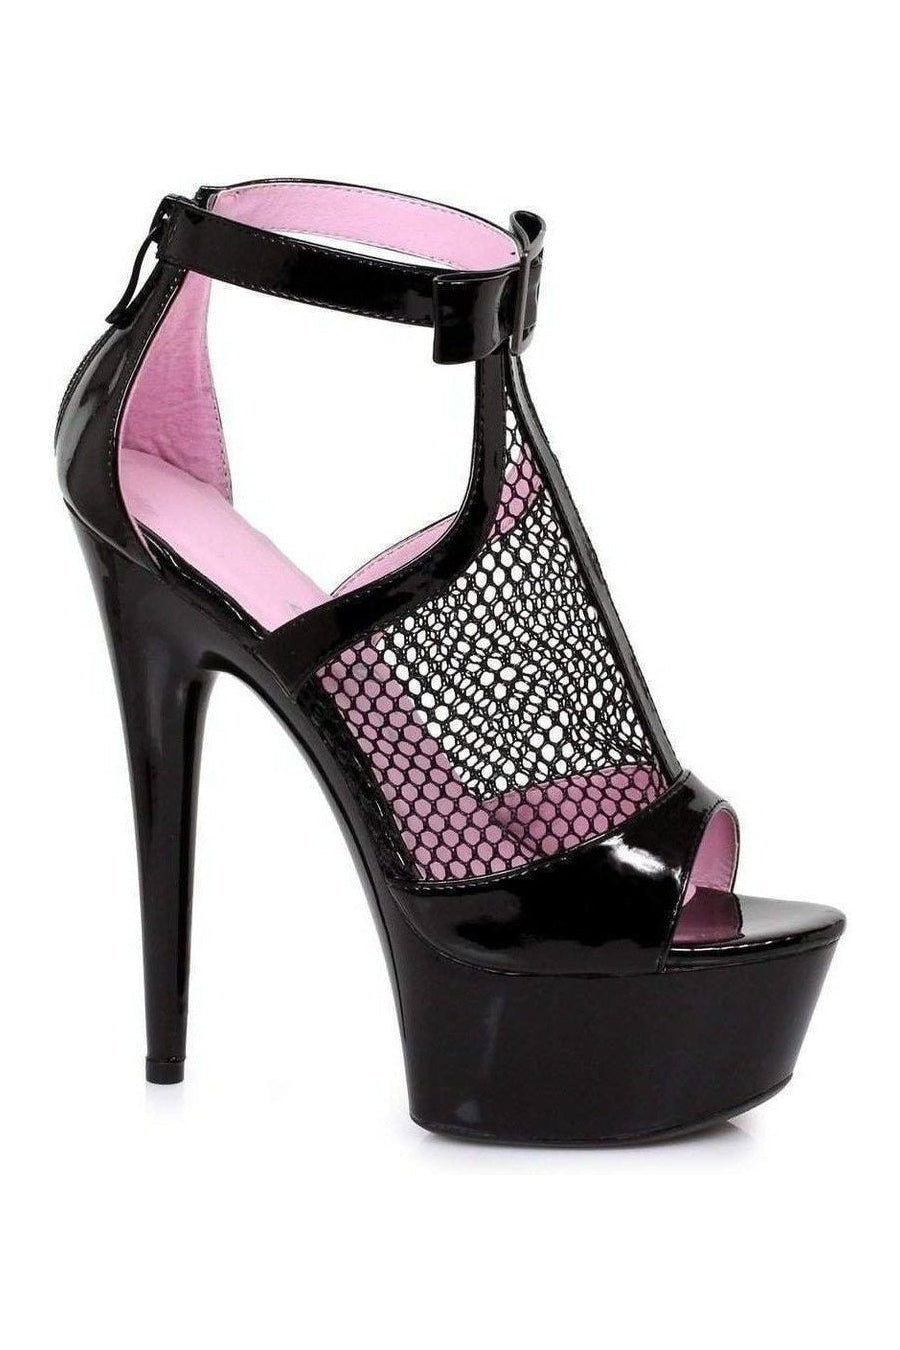 609-CAIS Platform Sandal | Black Patent-Ellie Shoes-Black-Sandals-SEXYSHOES.COM